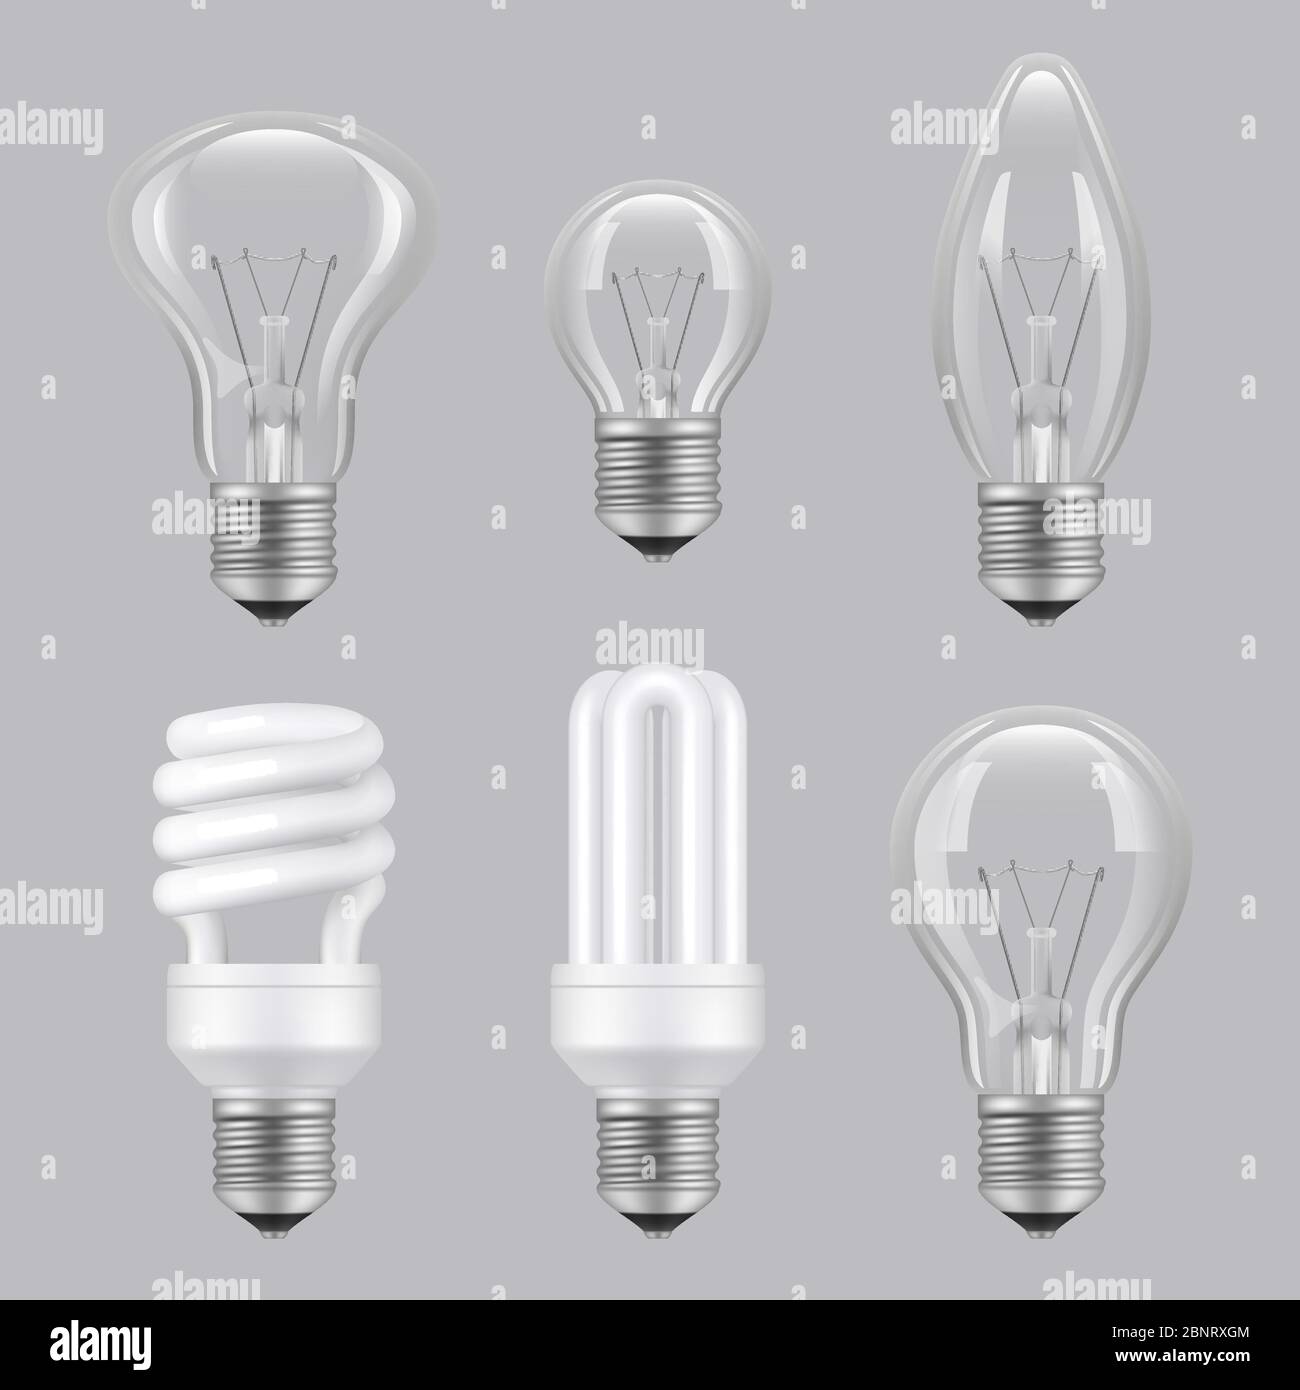 Realistische Lampen. Beleuchtung Elektrizität Glas transparente Lampen Vektor Sammlung Bilder Stock Vektor